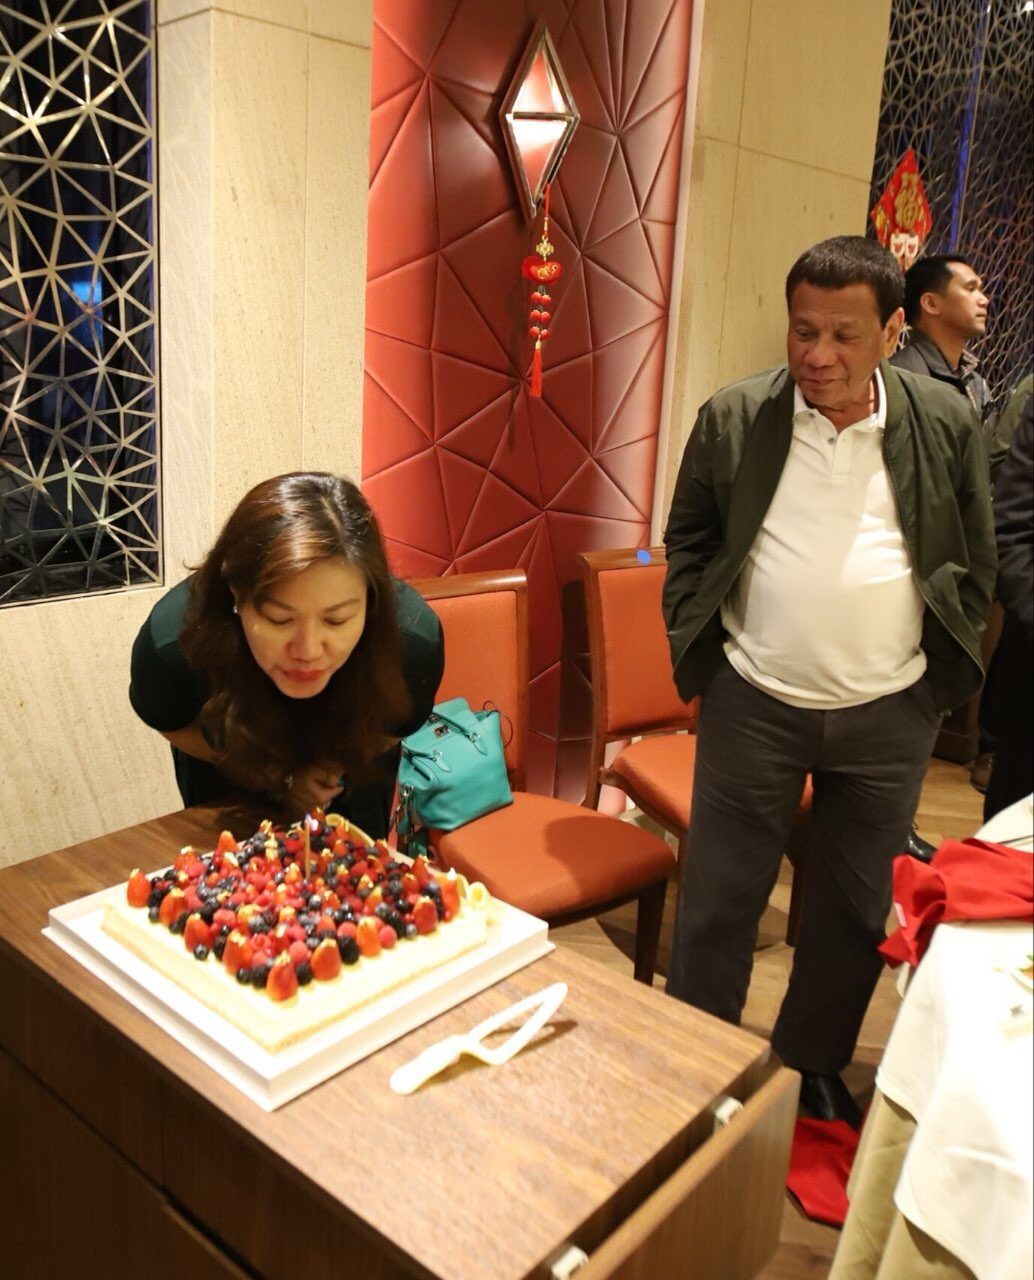 BIRTHDAY. President Rodrigo Duterte looks on as his longtime partner Honeylet Avanceña blows a birthday cake in Hong Kong on February 16, 2019. Photo from Bong Go 